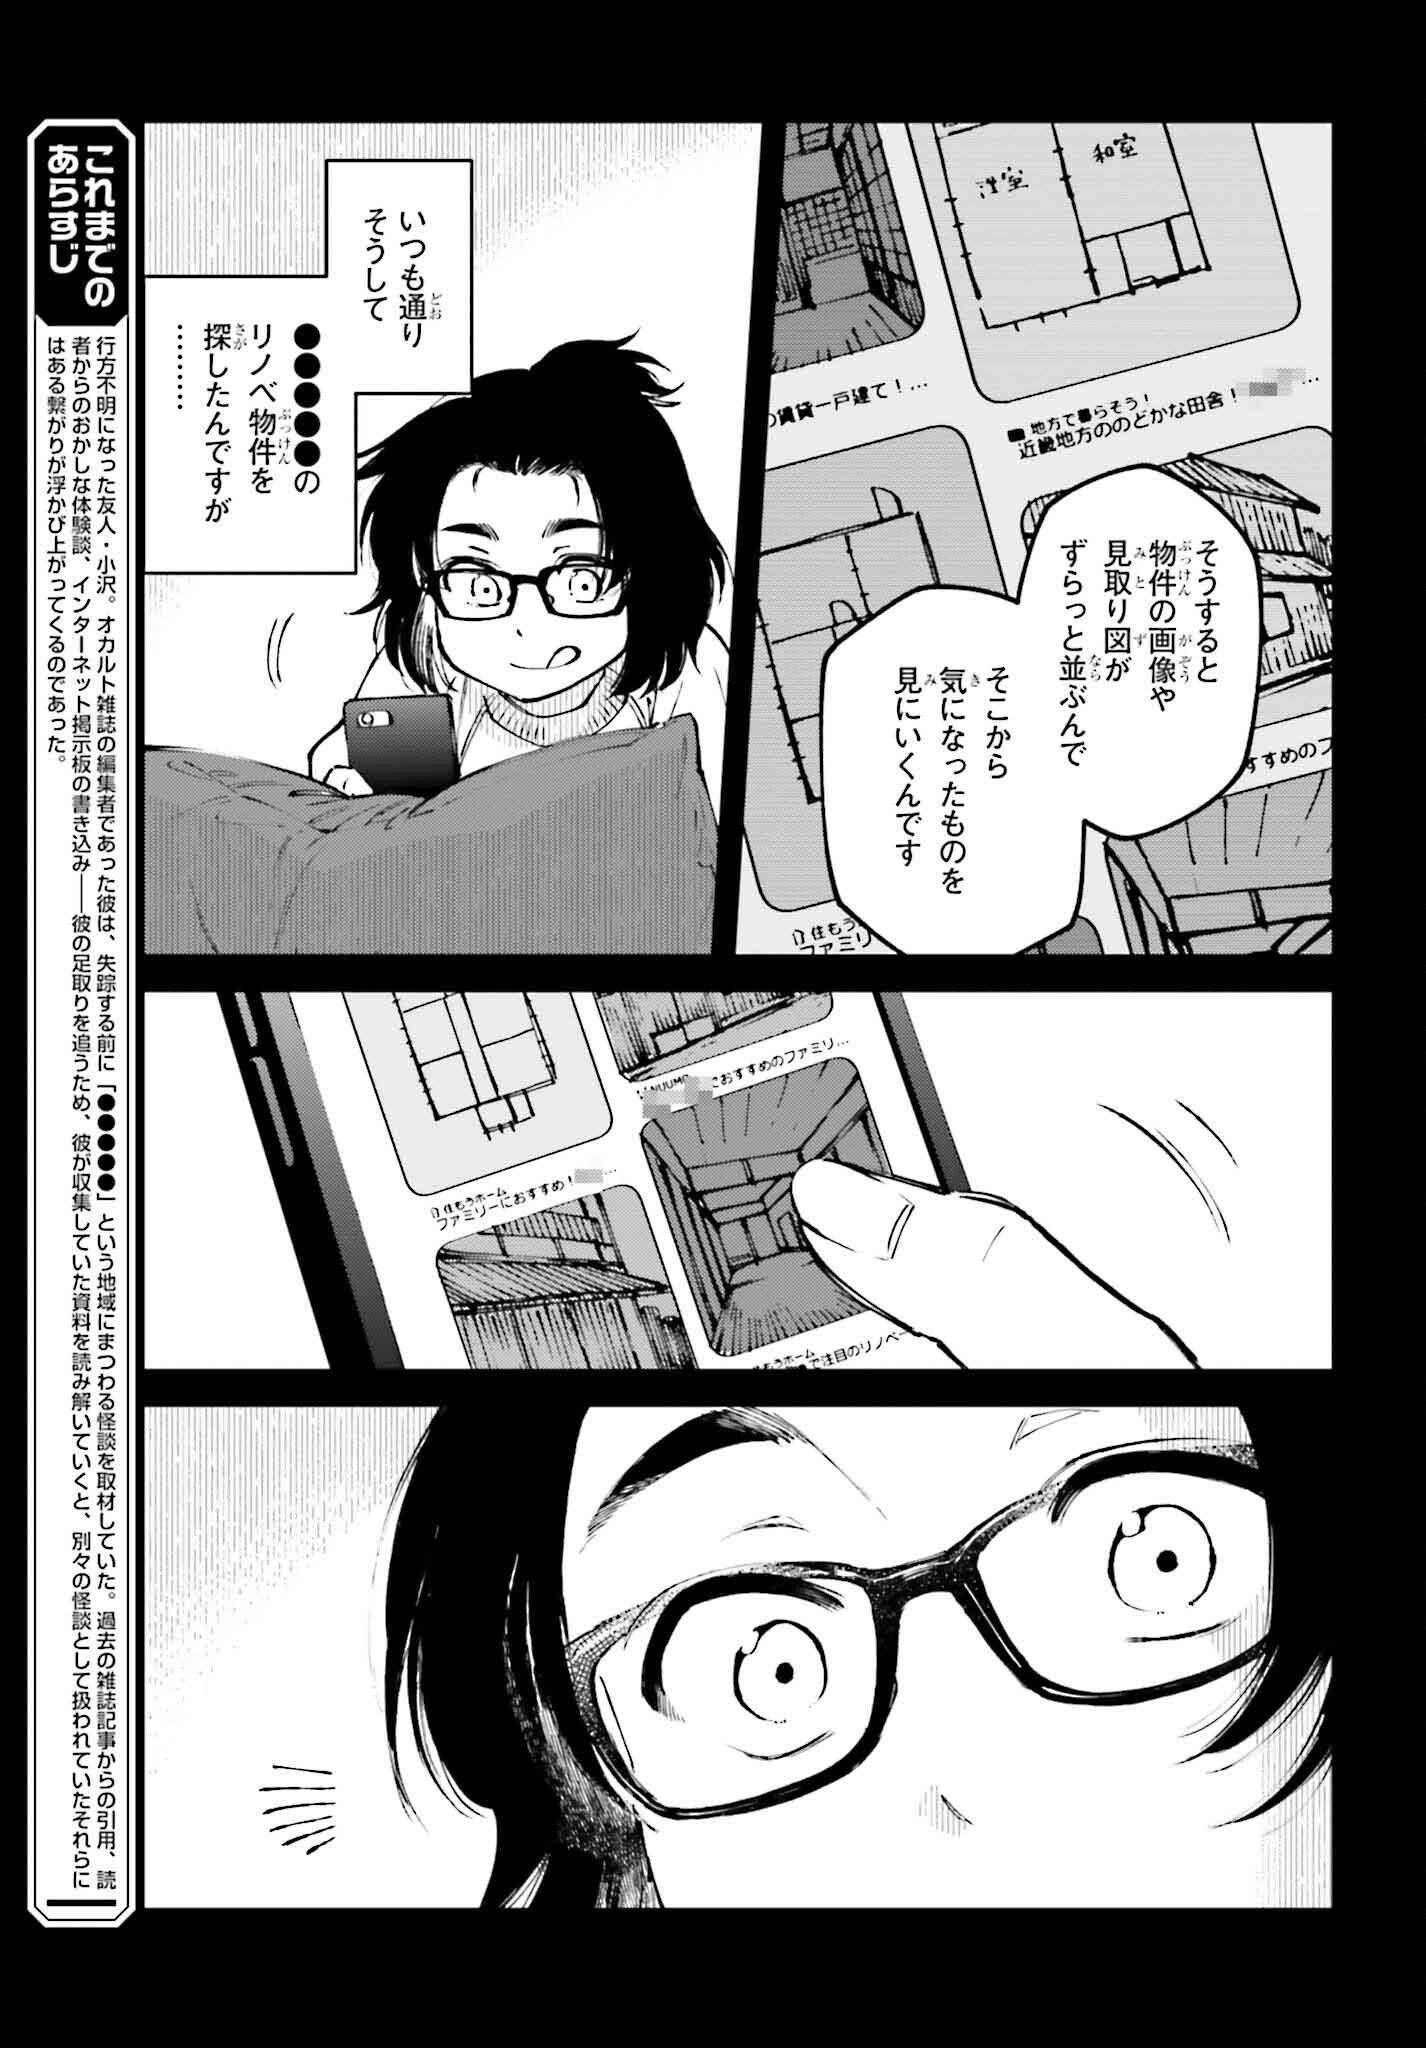 Kinki Chihou no Aru Basho ni Tsuite - Chapter 6 - Page 3